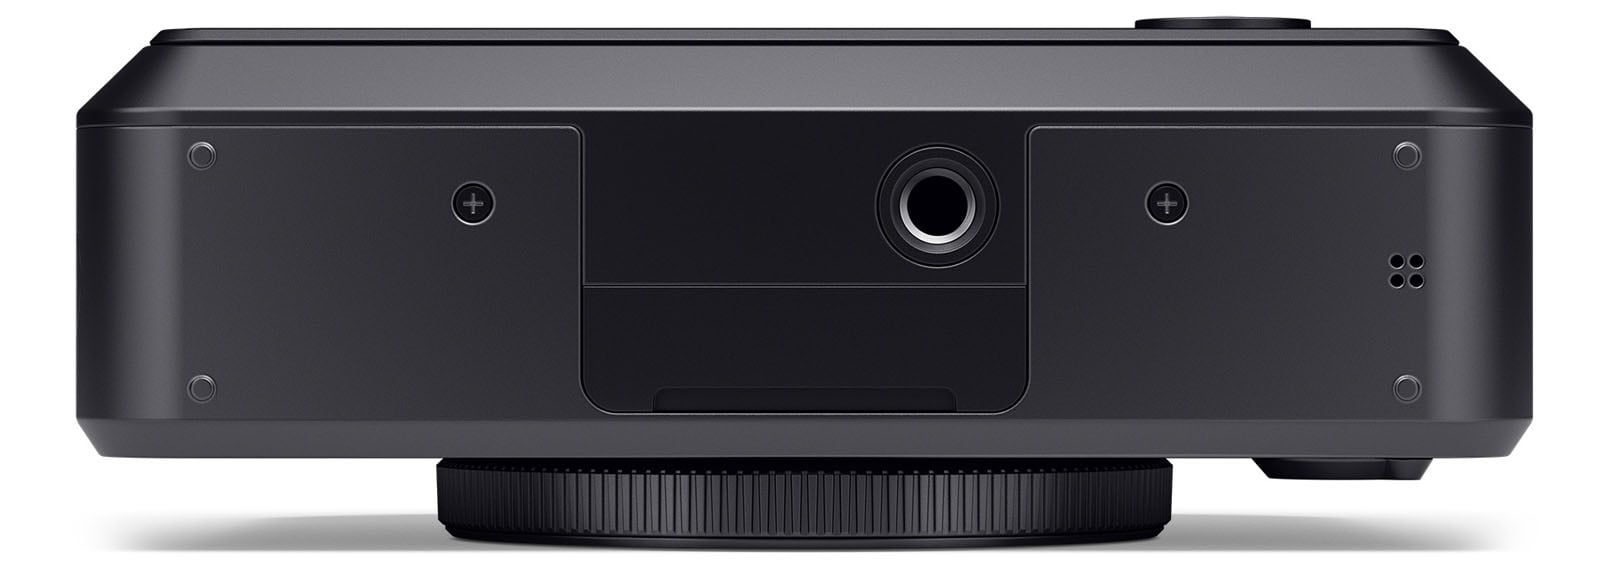 Leica Sofort 2 hybrid instant camera